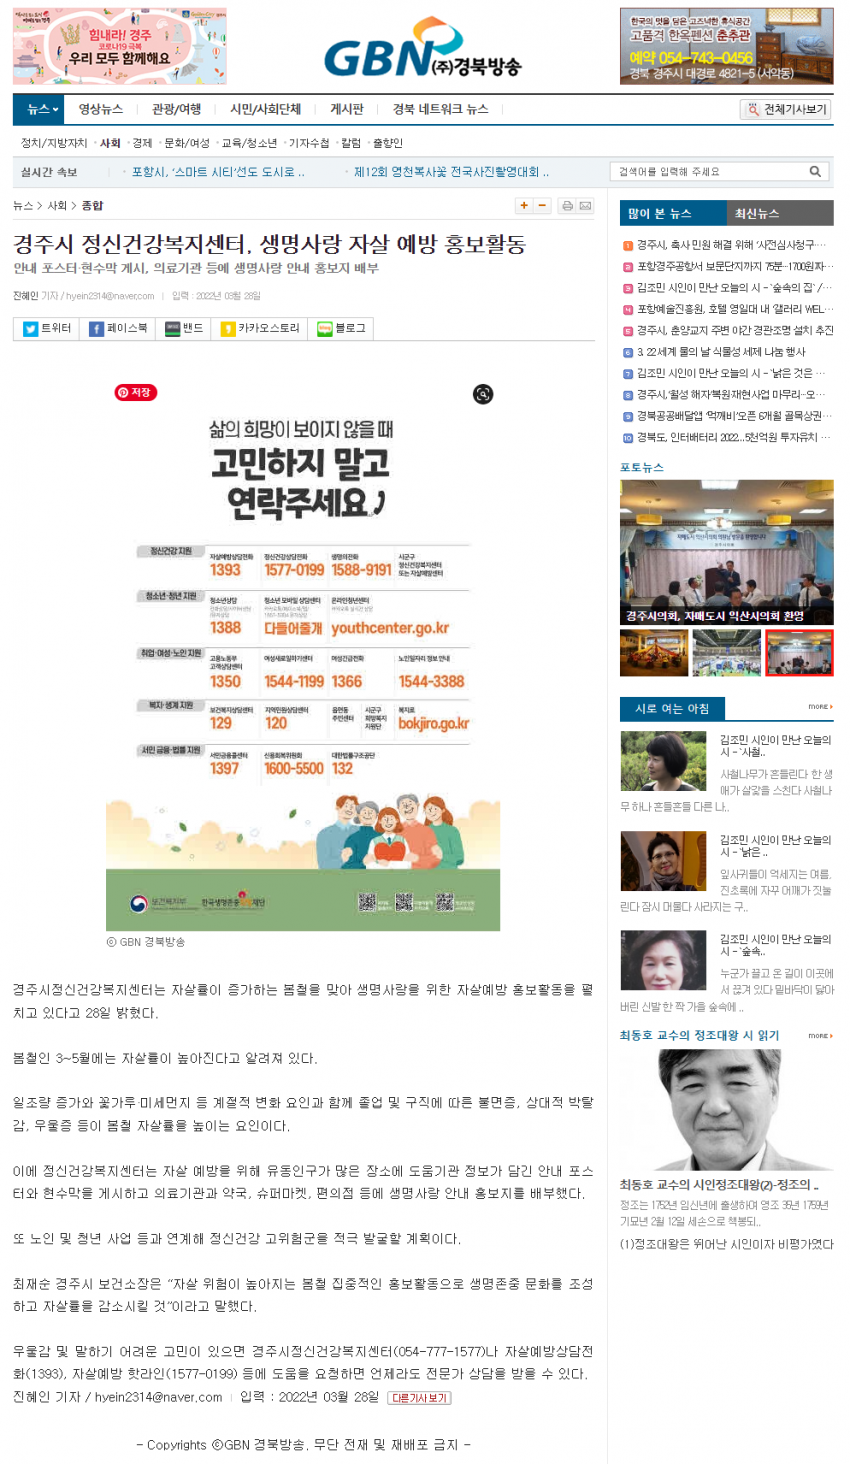 경주시정신건강복지센터, 생명사랑 자살예방 홍보활동_gbn경북방송.png